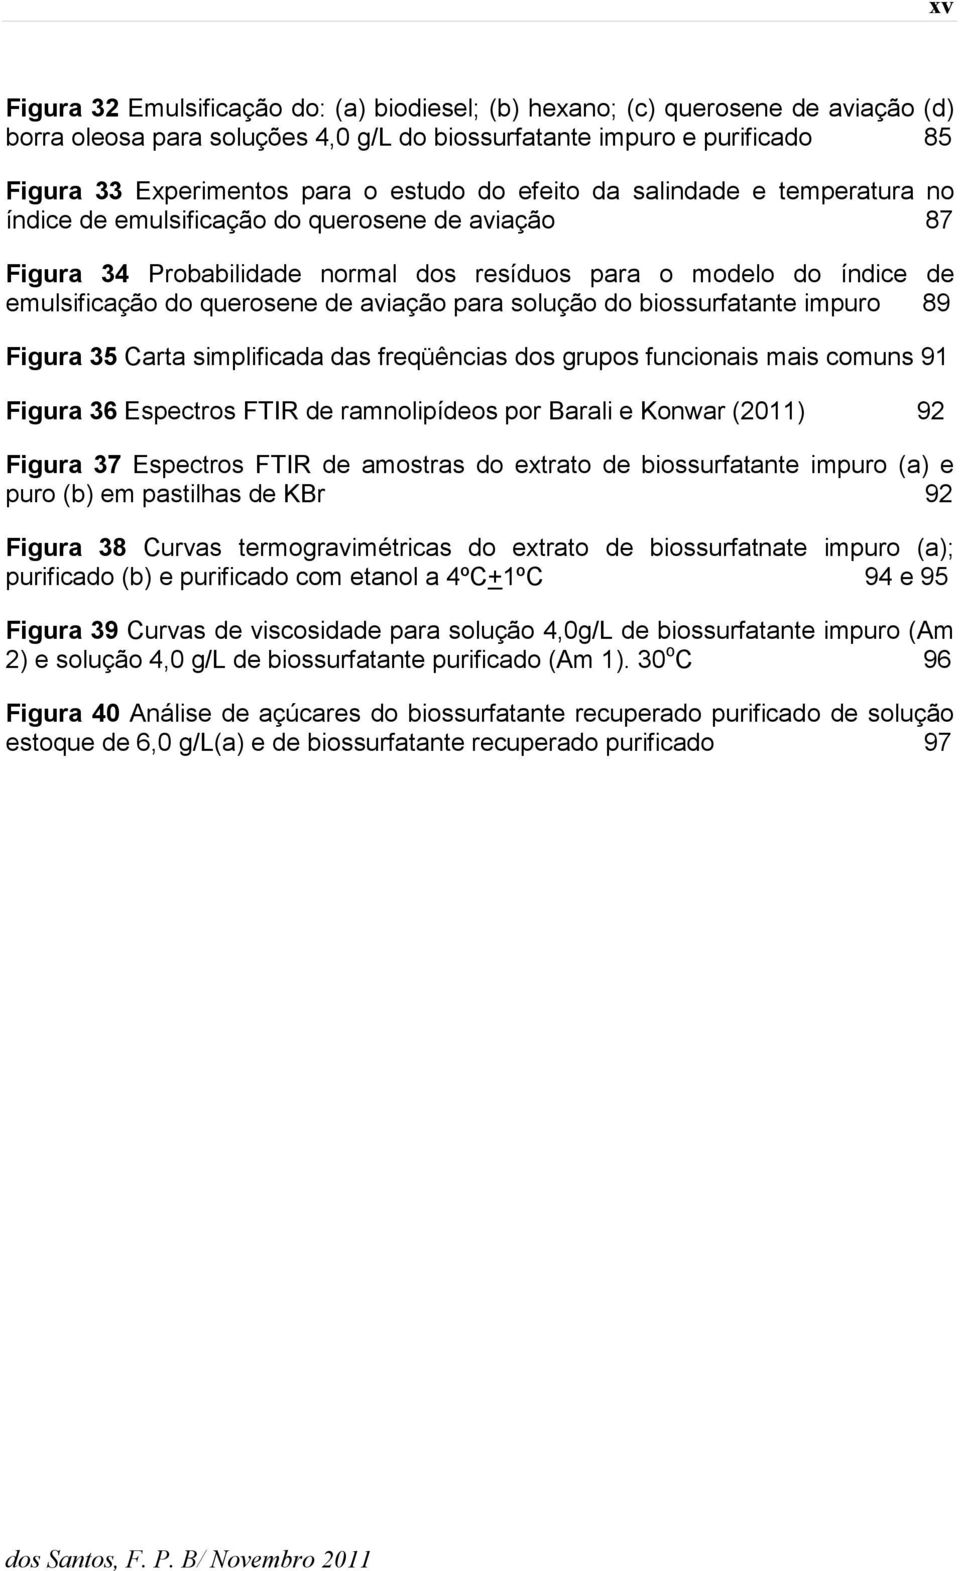 para solução do biossurfatante impuro 89 Figura 35 Carta simplificada das freqüências dos grupos funcionais mais comuns 91 Figura 36 Espectros FTIR de ramnolipídeos por Barali e Konwar (2011) 92